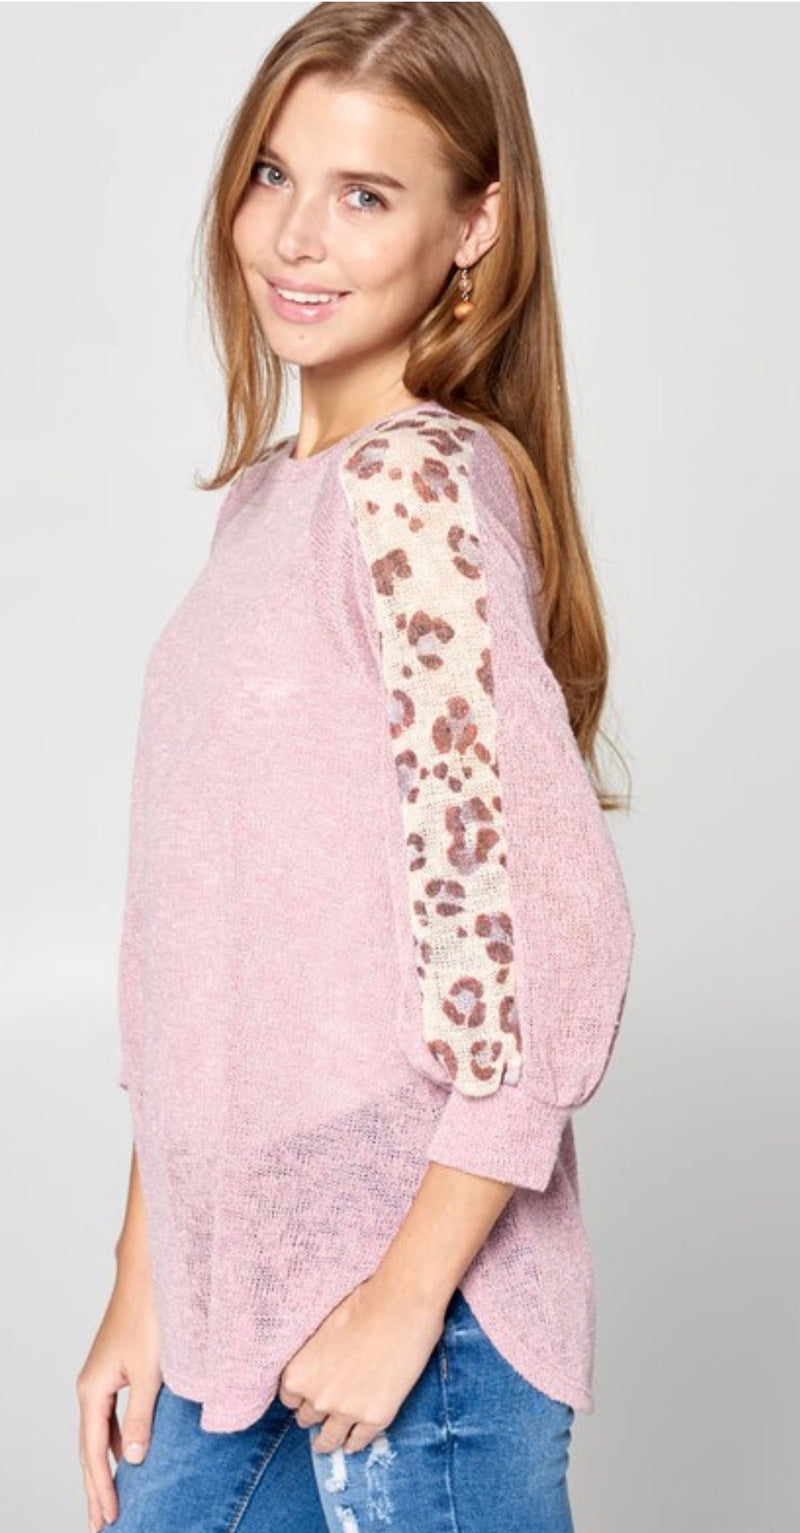 Pink Semi-sheer knit top with cheetah print